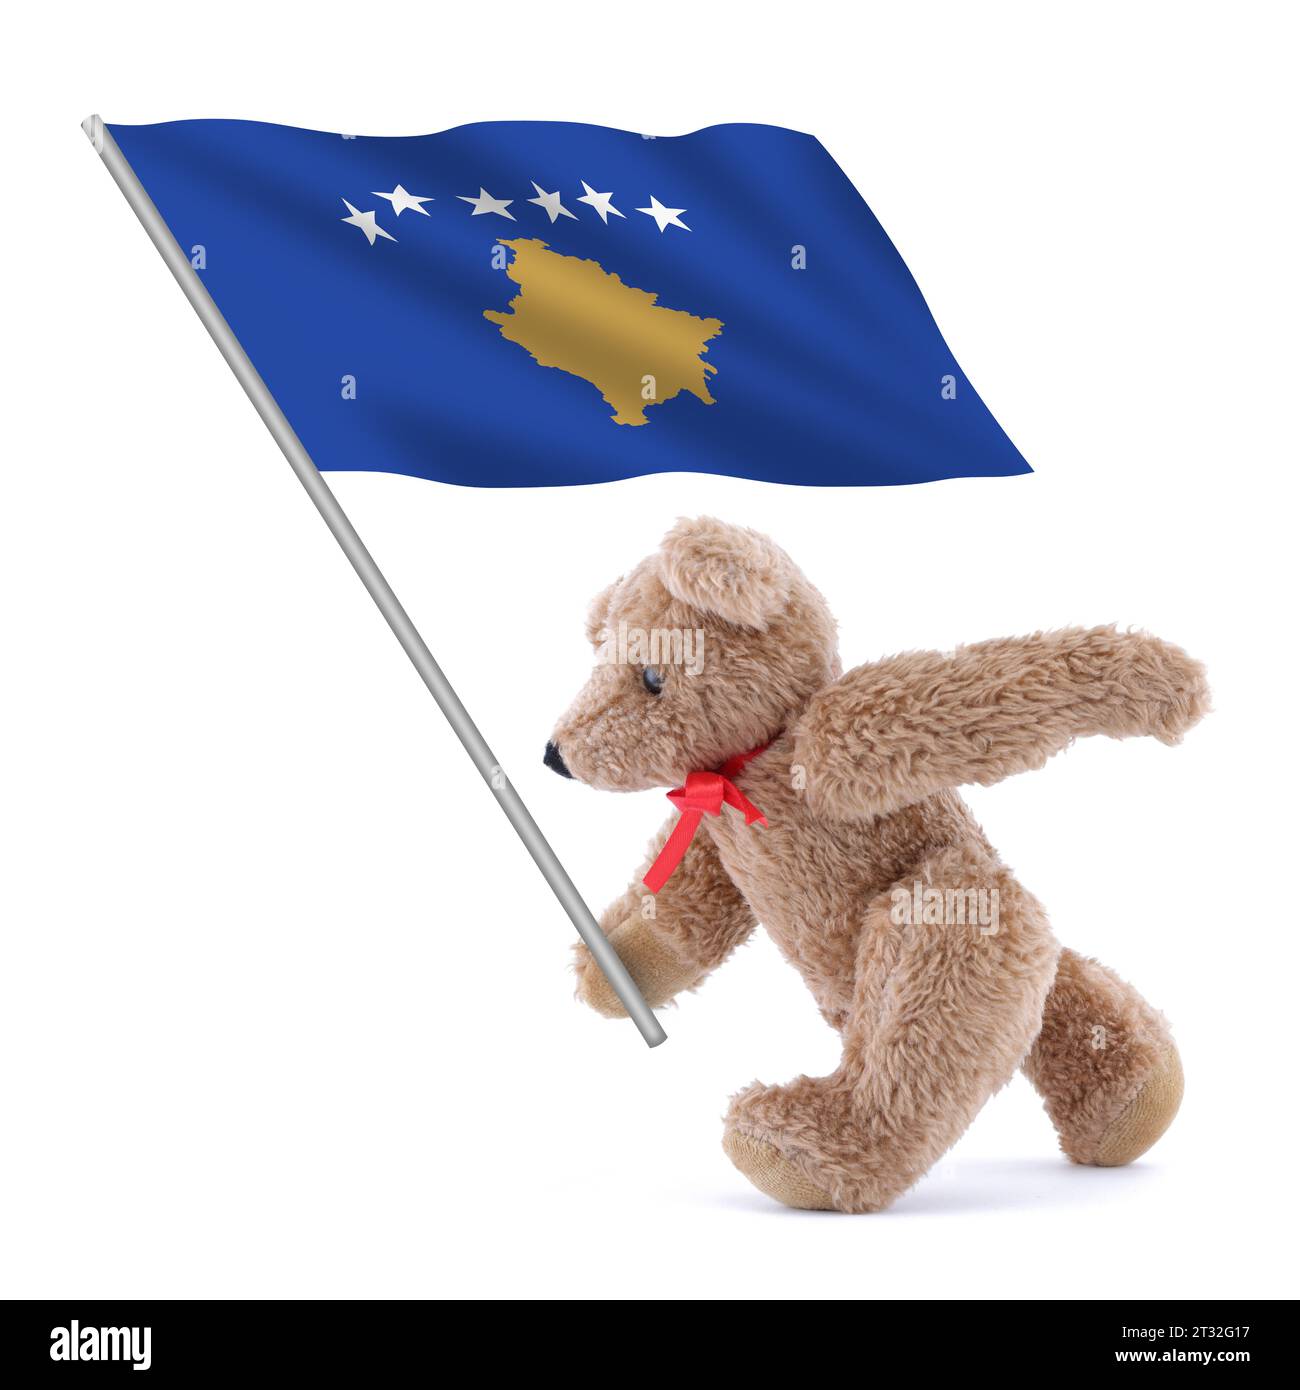 Die Kosovo-Flagge wird von einem süßen Teddybären getragen Stockfoto